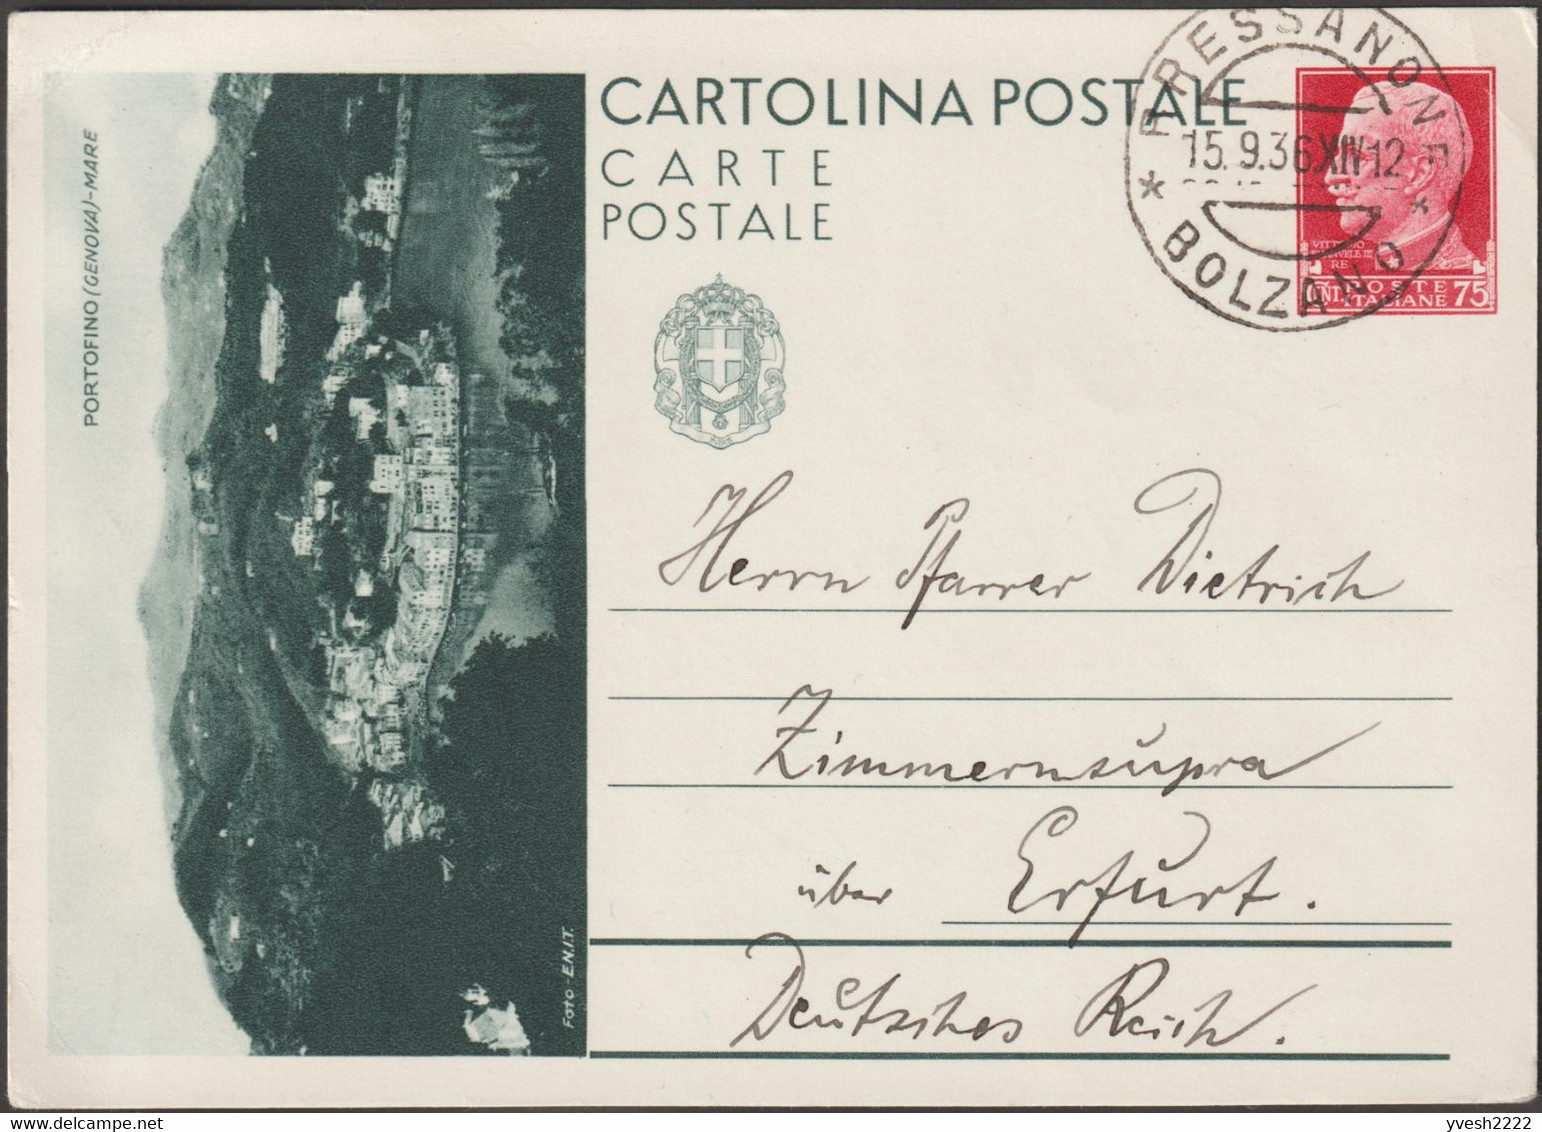 Italie 1936. Entier Postal Touristique Pour L'étranger. Portofino, Genova. Village Entre Mer Et Montagne. Bressanone - Montagnes